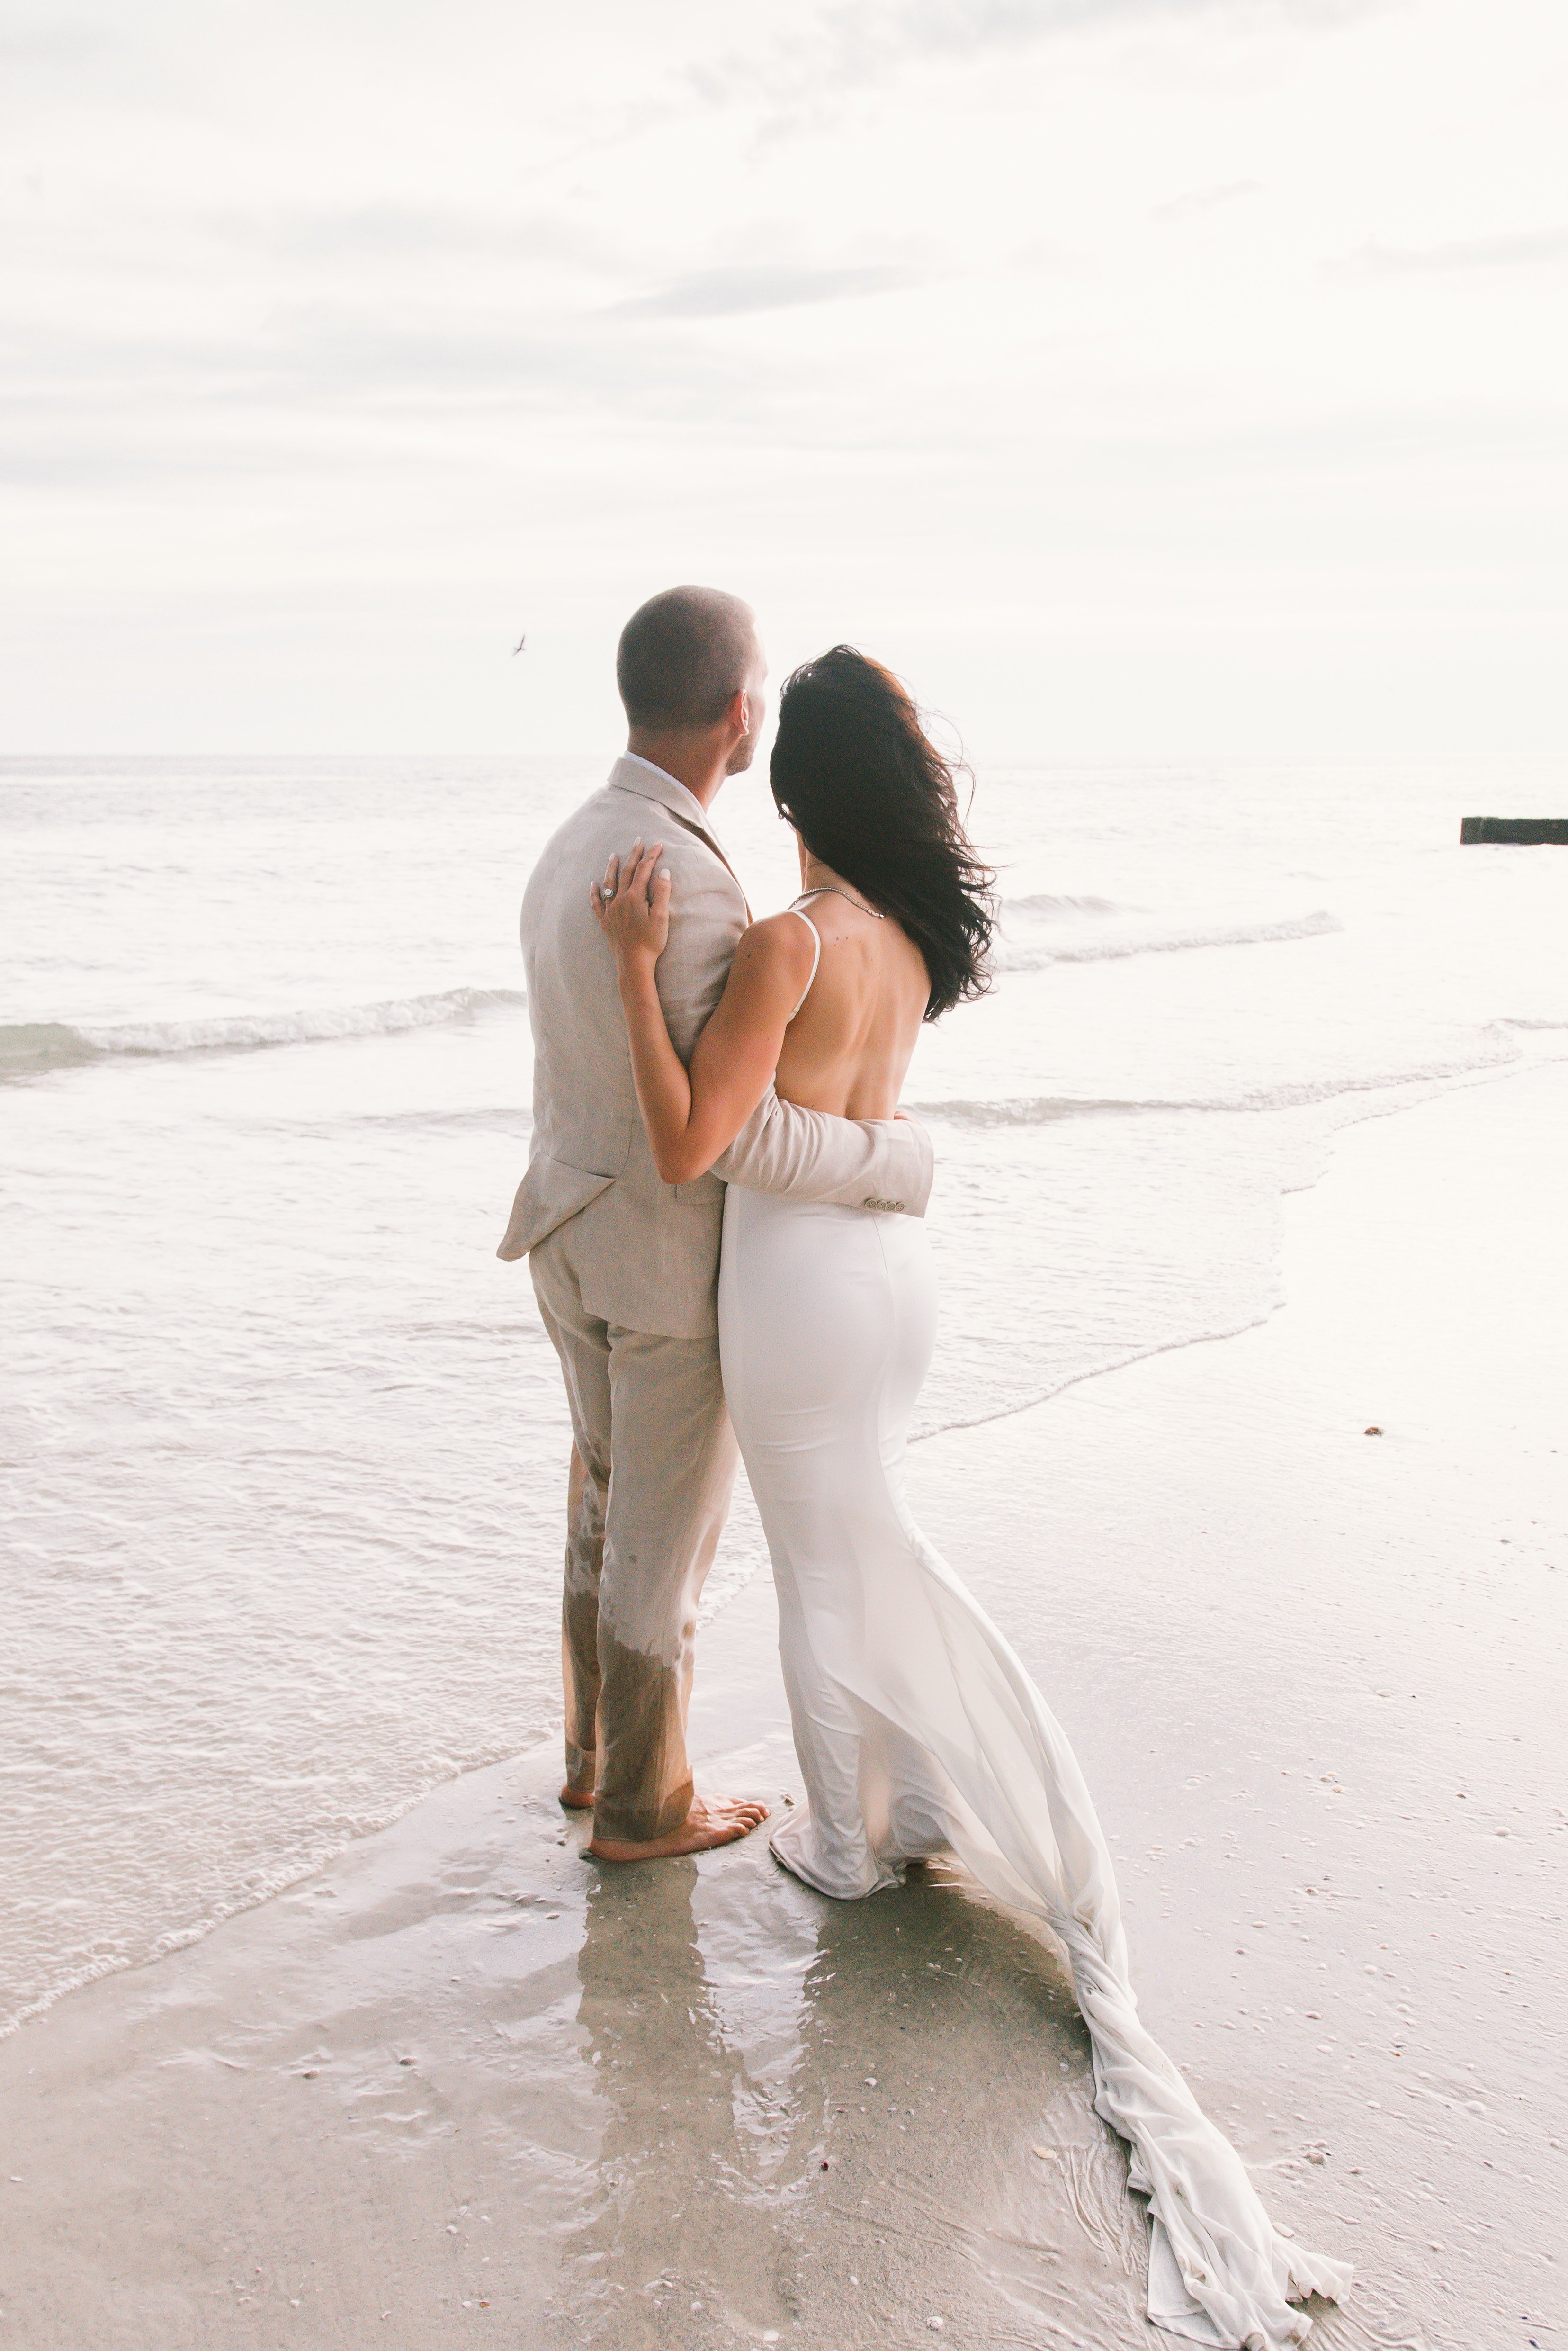 Recién casados en la playa. | Foto: Pexels